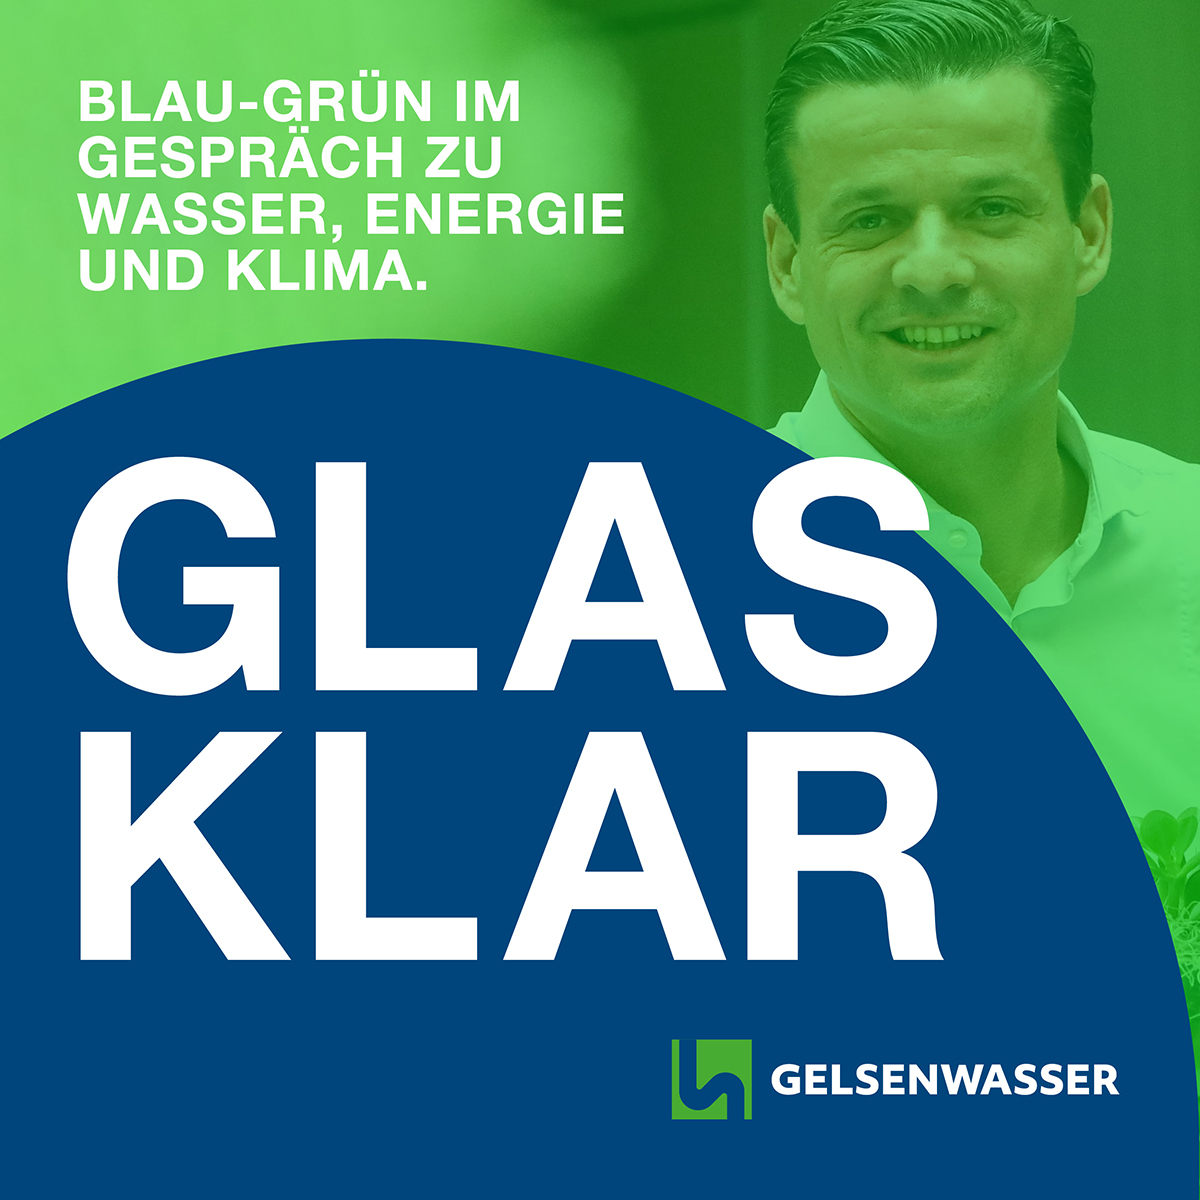 GLASKLAR ist der Politik-Podcast von Gelsenwasser